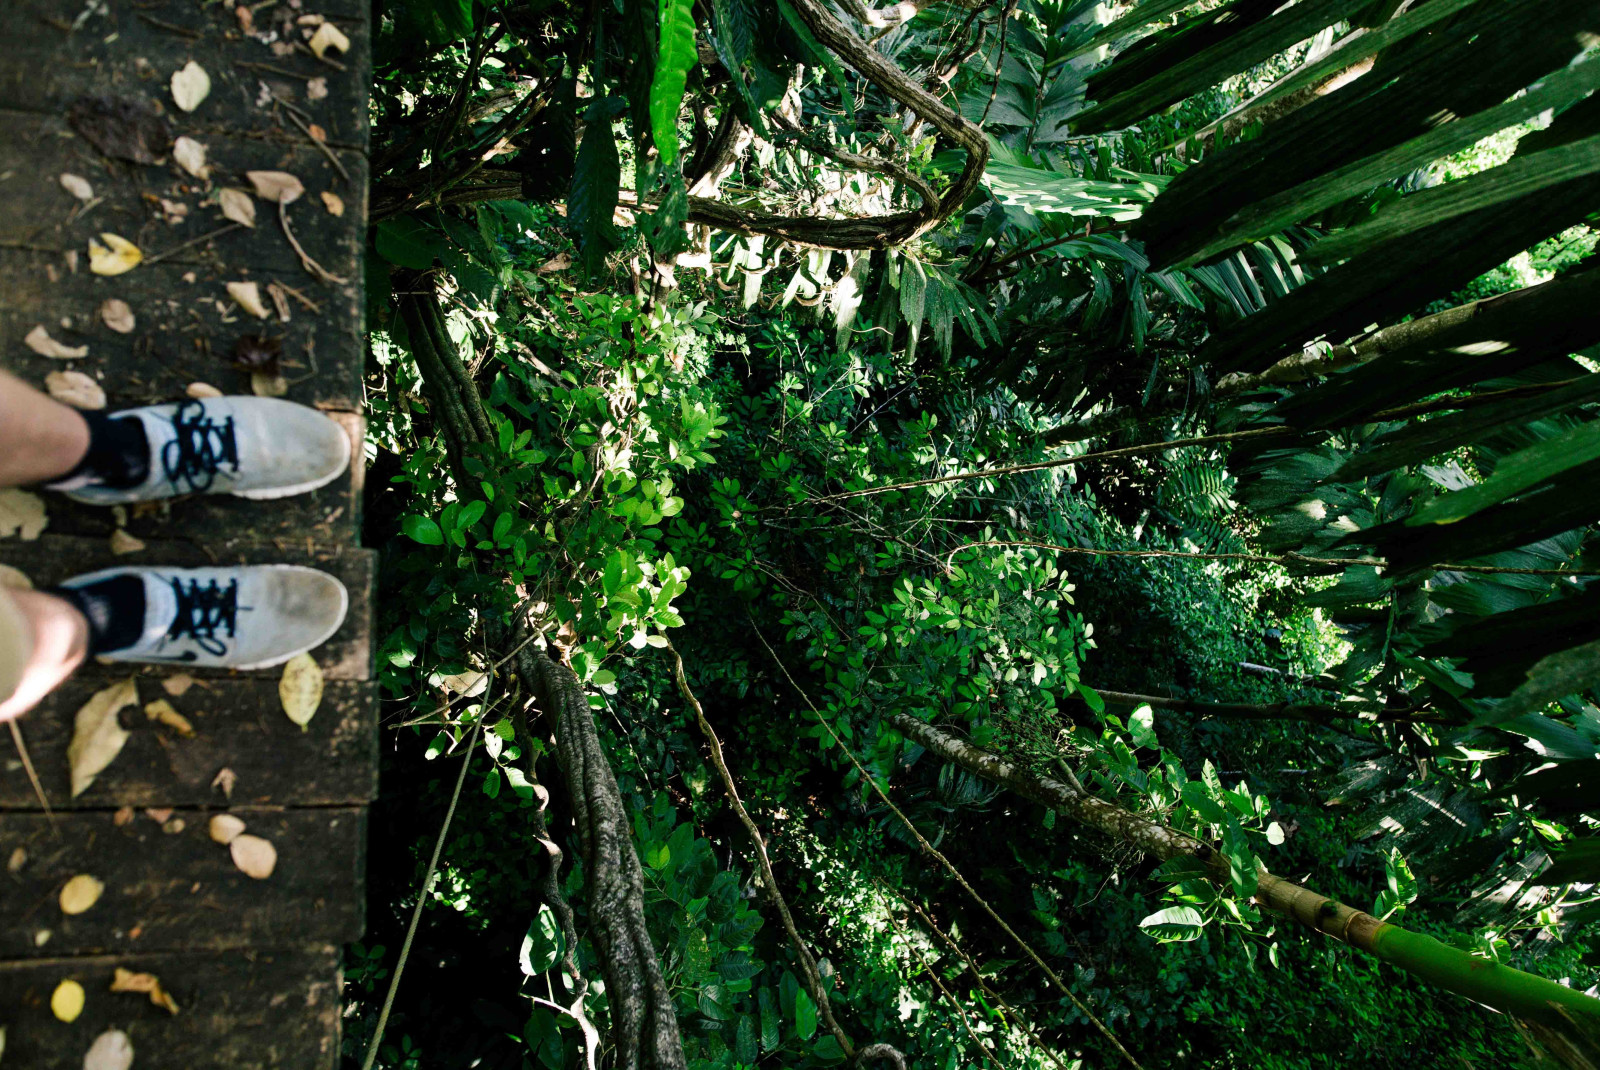 Zip line in the jungle in Costa Rica. 